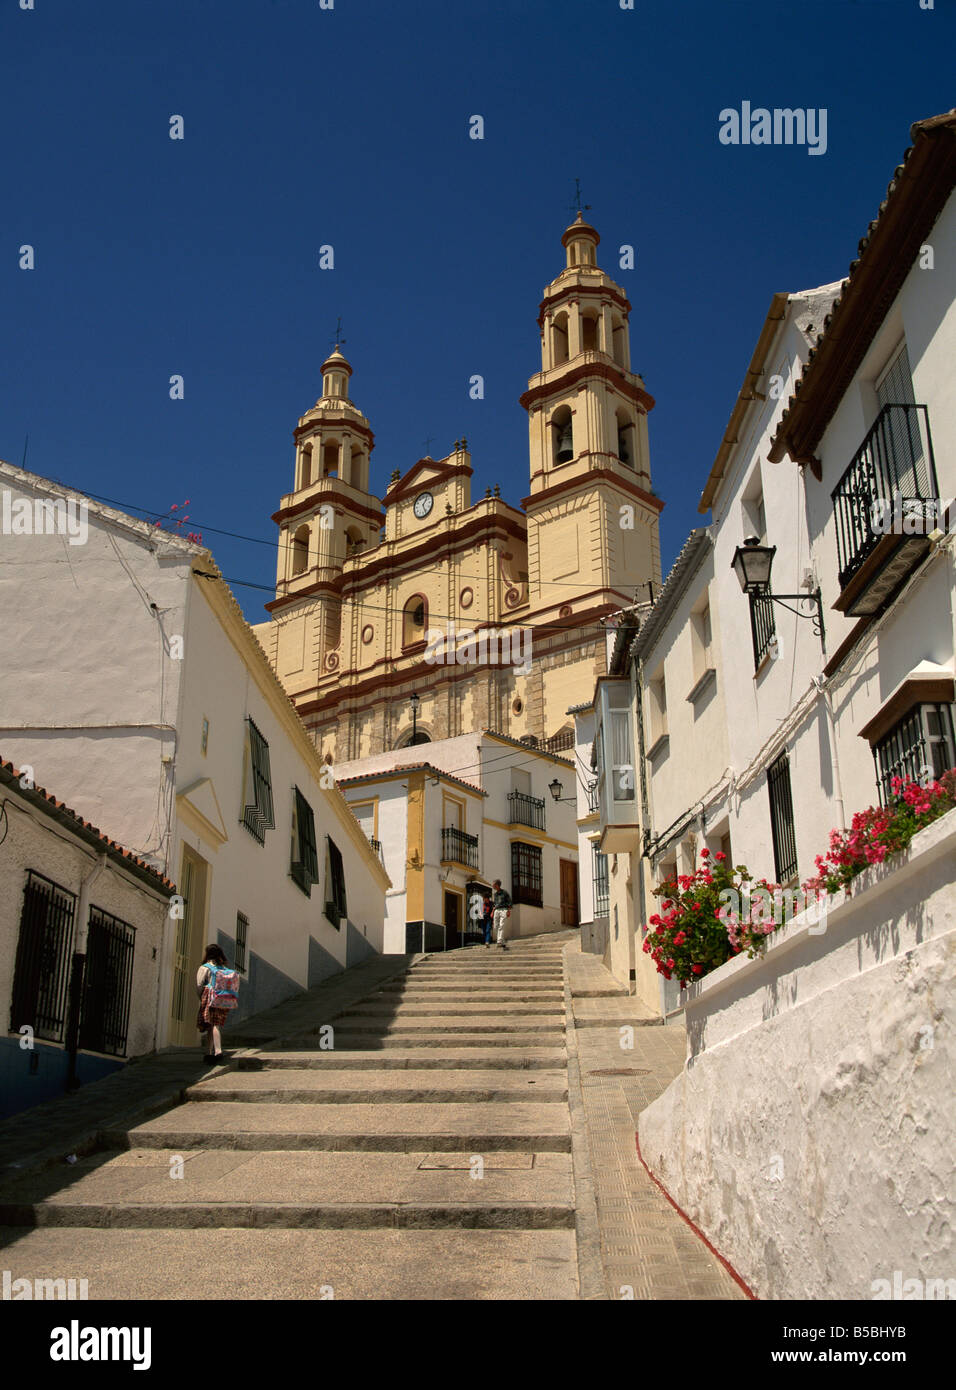 La basilique, Olvera, Andalousie, Espagne, Europe Banque D'Images